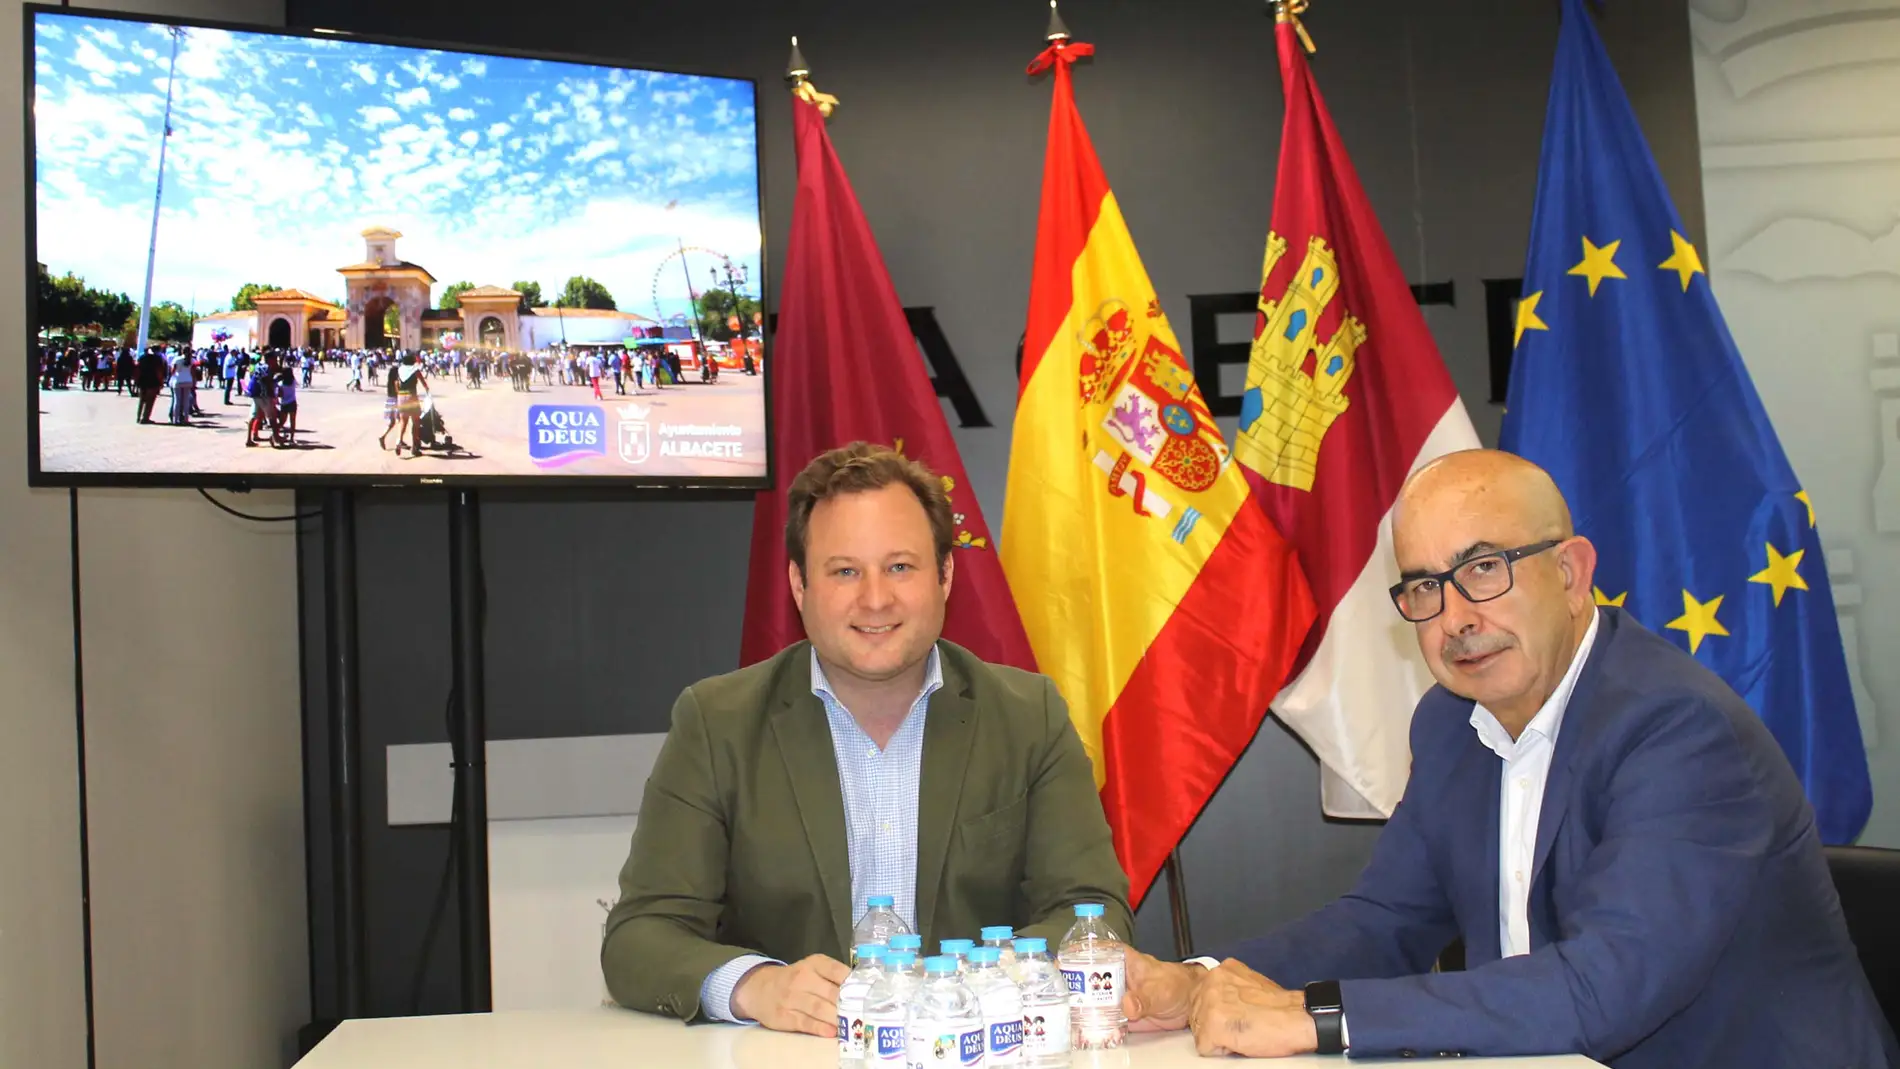 El director comercial de Aquadeus, Julián Garre (derecha) y el primer teniente alcalde de Albacete, Vicente Casañ (izquierda), durante la presentación de la edición especial de los botellines de Aquadeus con los motivos de la Feria de Albacete.